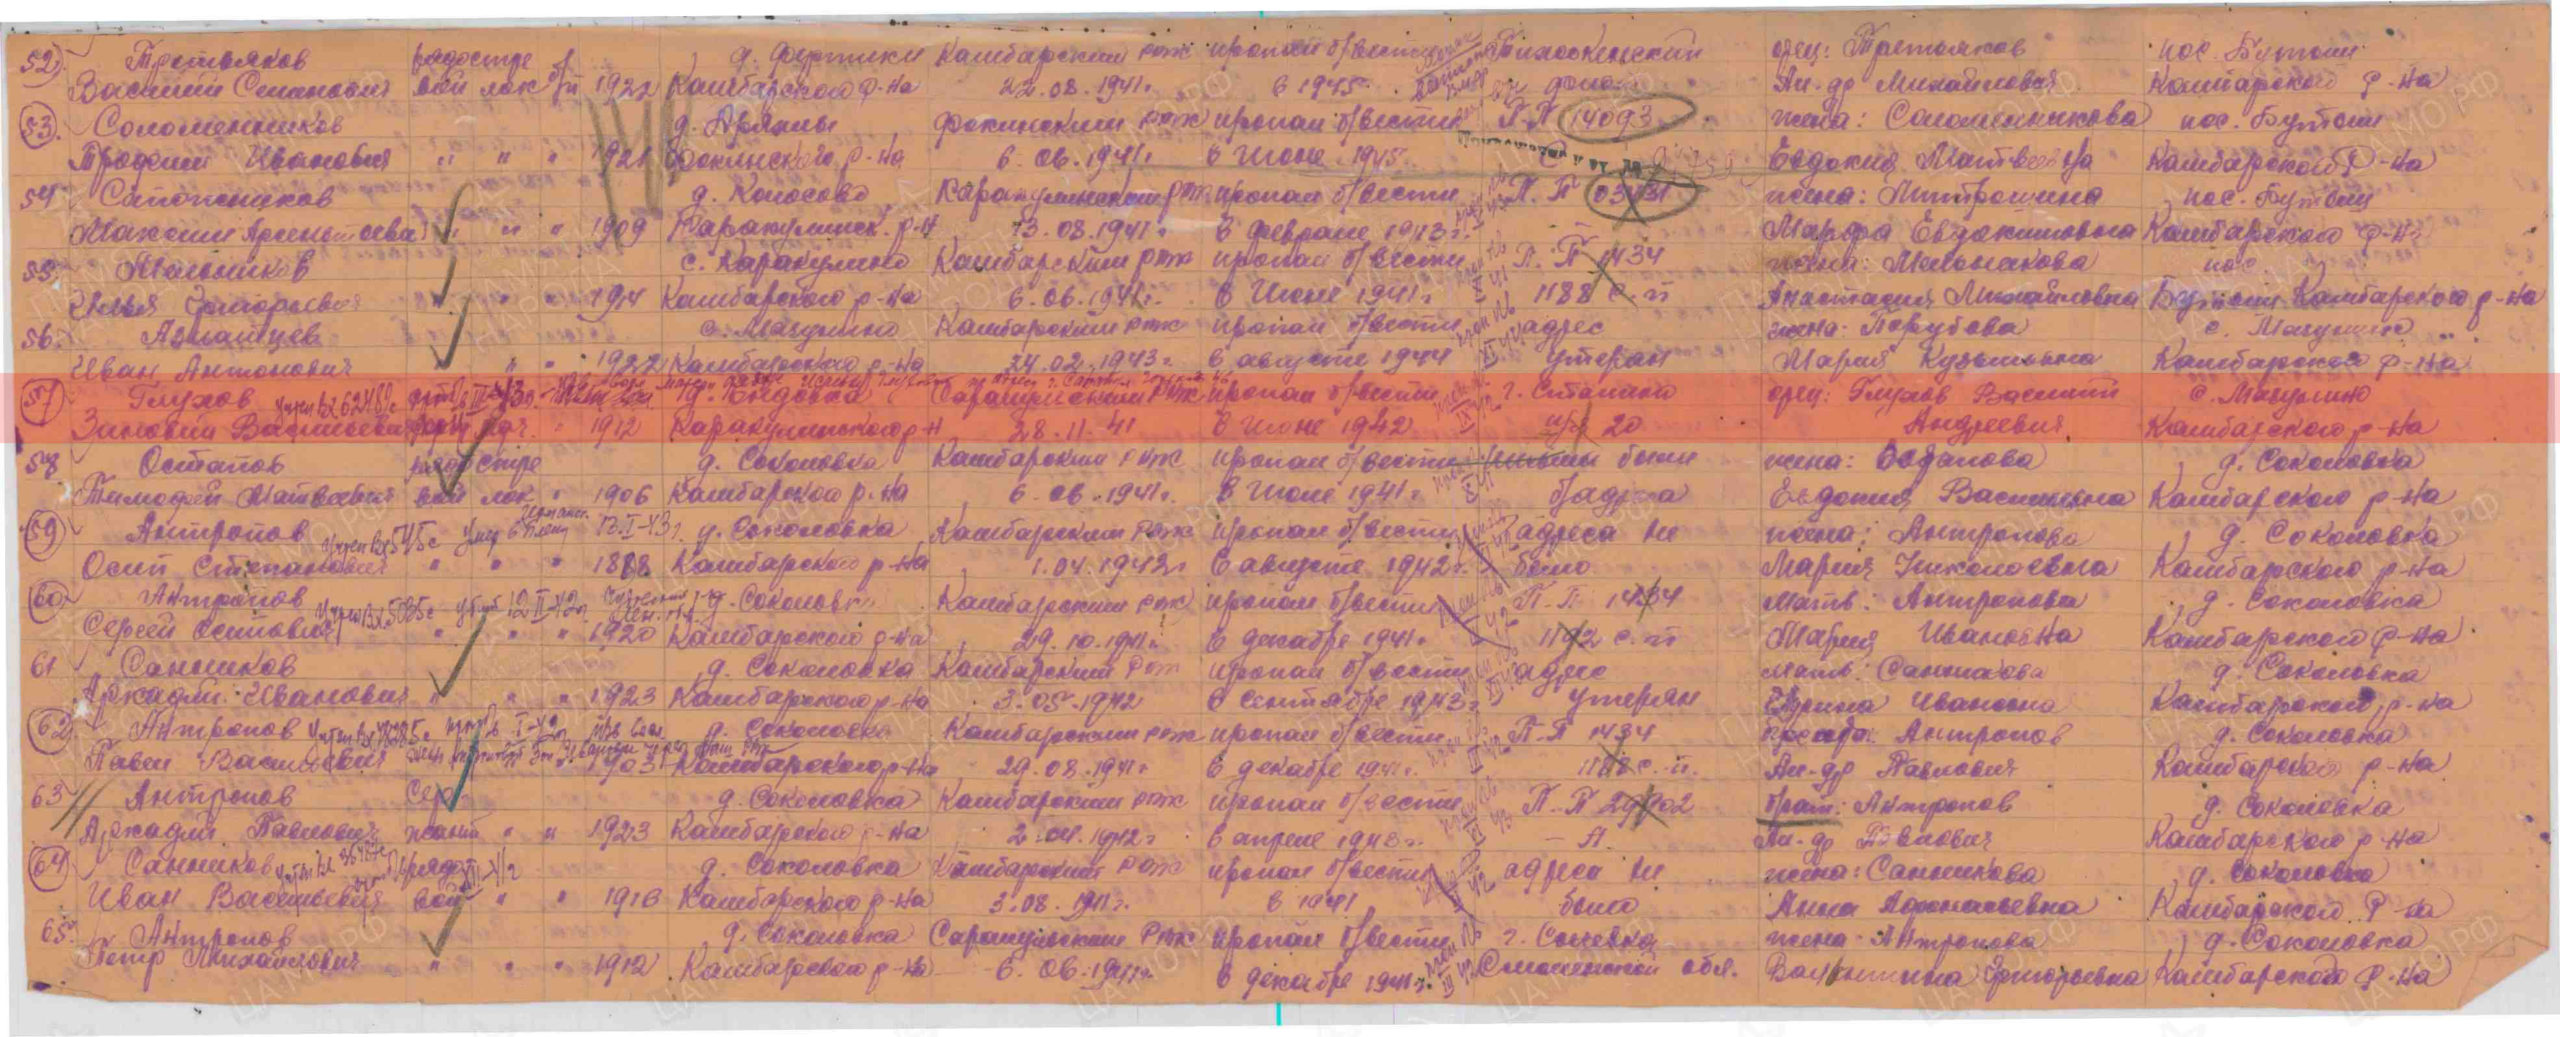 Лист донесения послевоенного периода, уточняющего потери,  15.11.1946